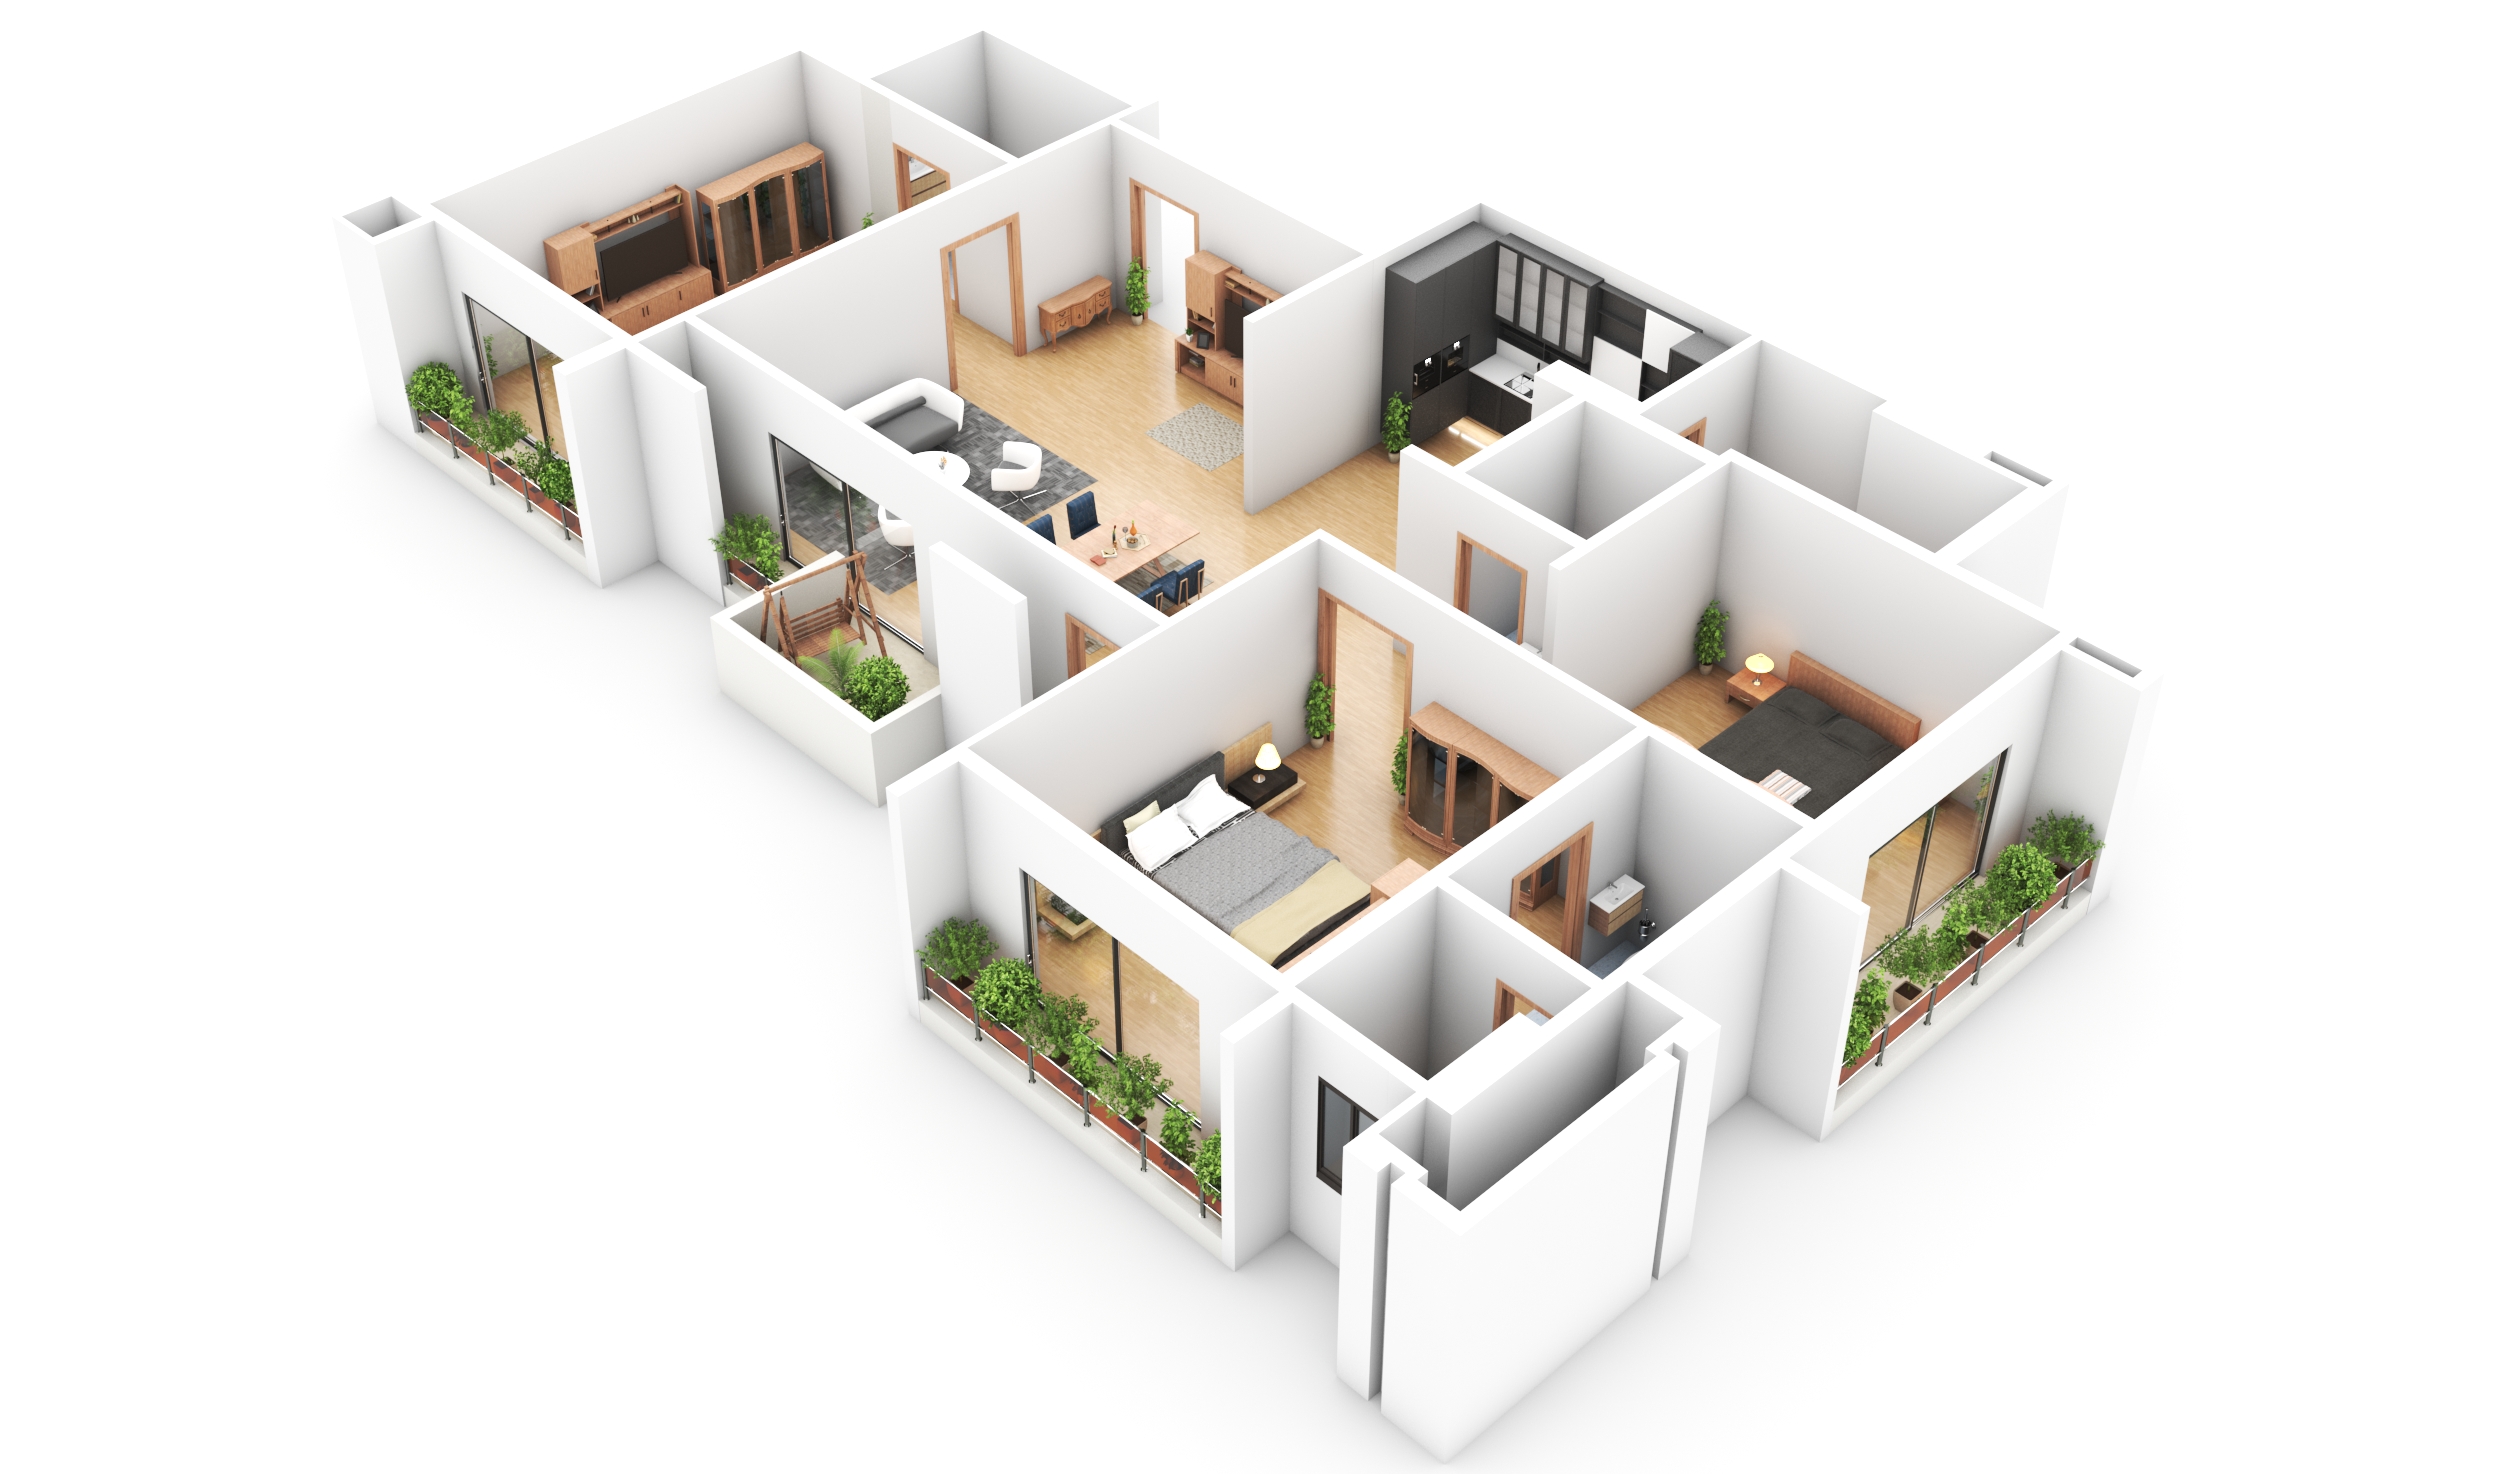 152413I will design floor plan 3d modeling, rendering house, office